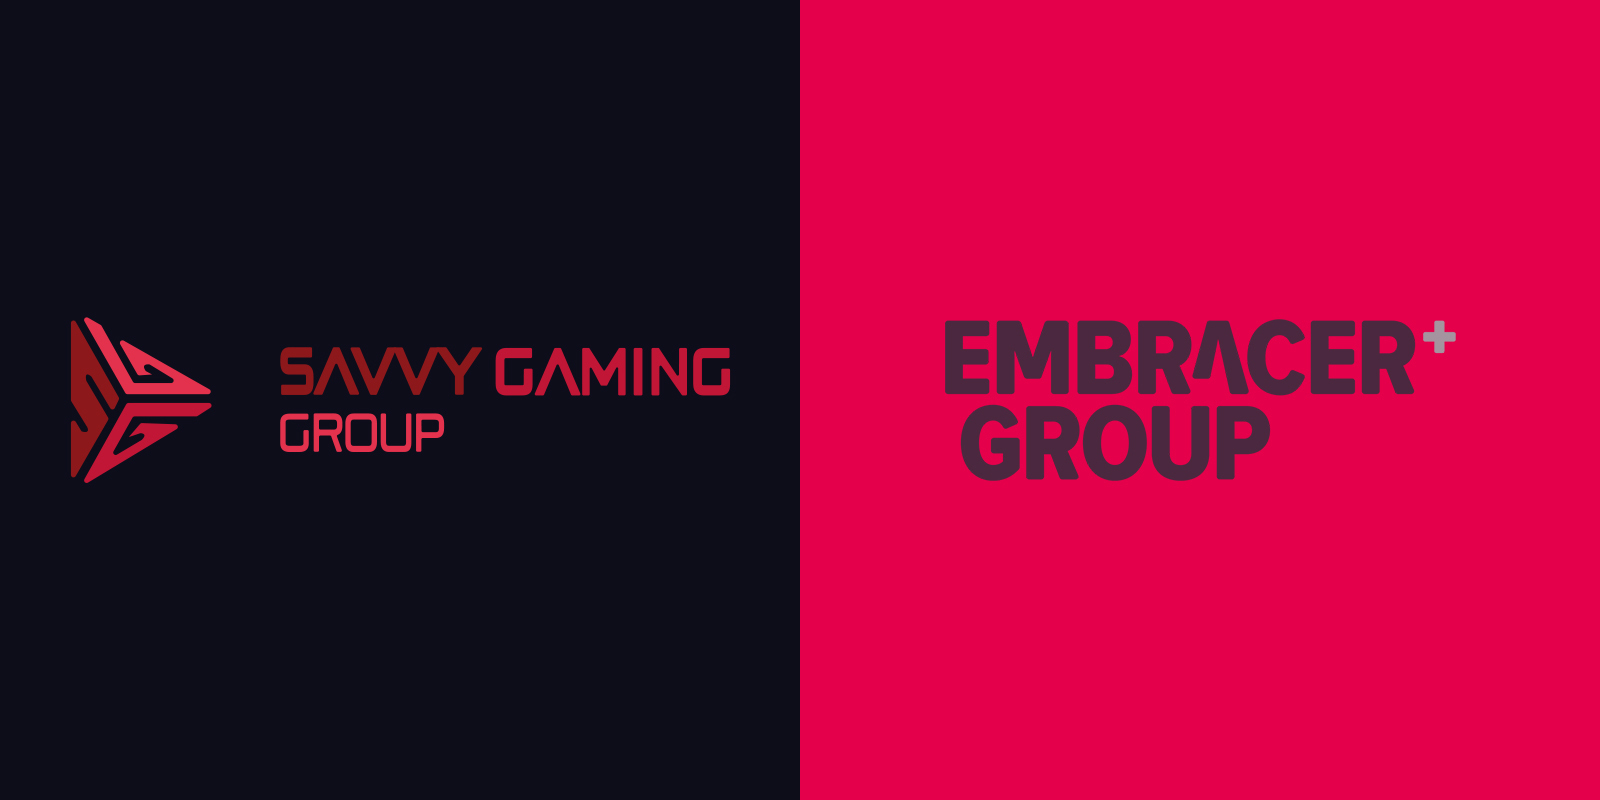 Le groupe Savvy Gaming, soutenu par l'Arabie Saoudite, a acheté pour 1 milliard de dollars d'actions du groupe Embrasser.